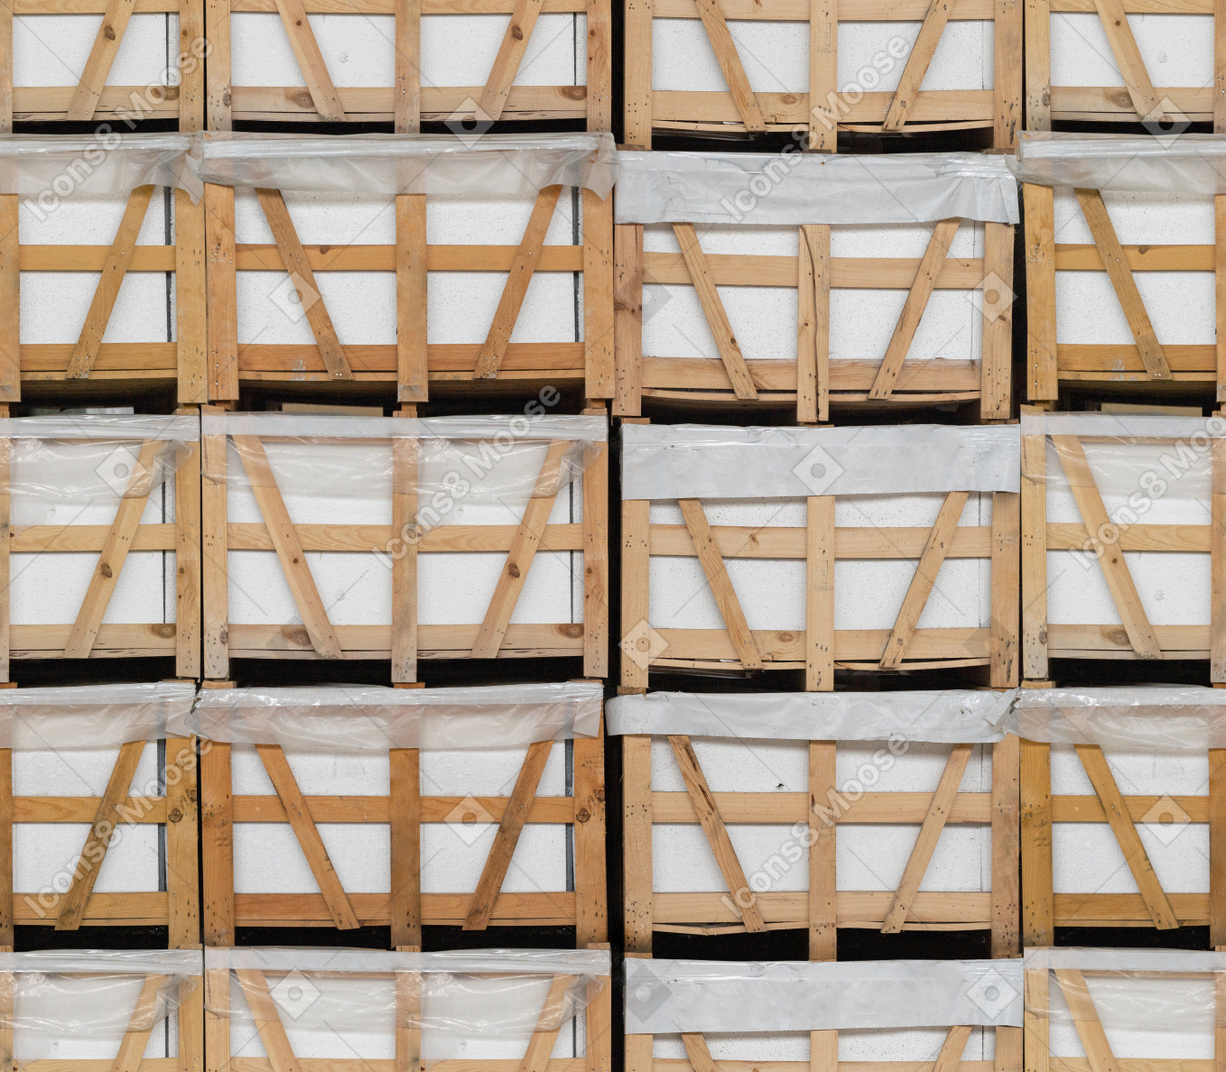 White bricks stored in wooden bins